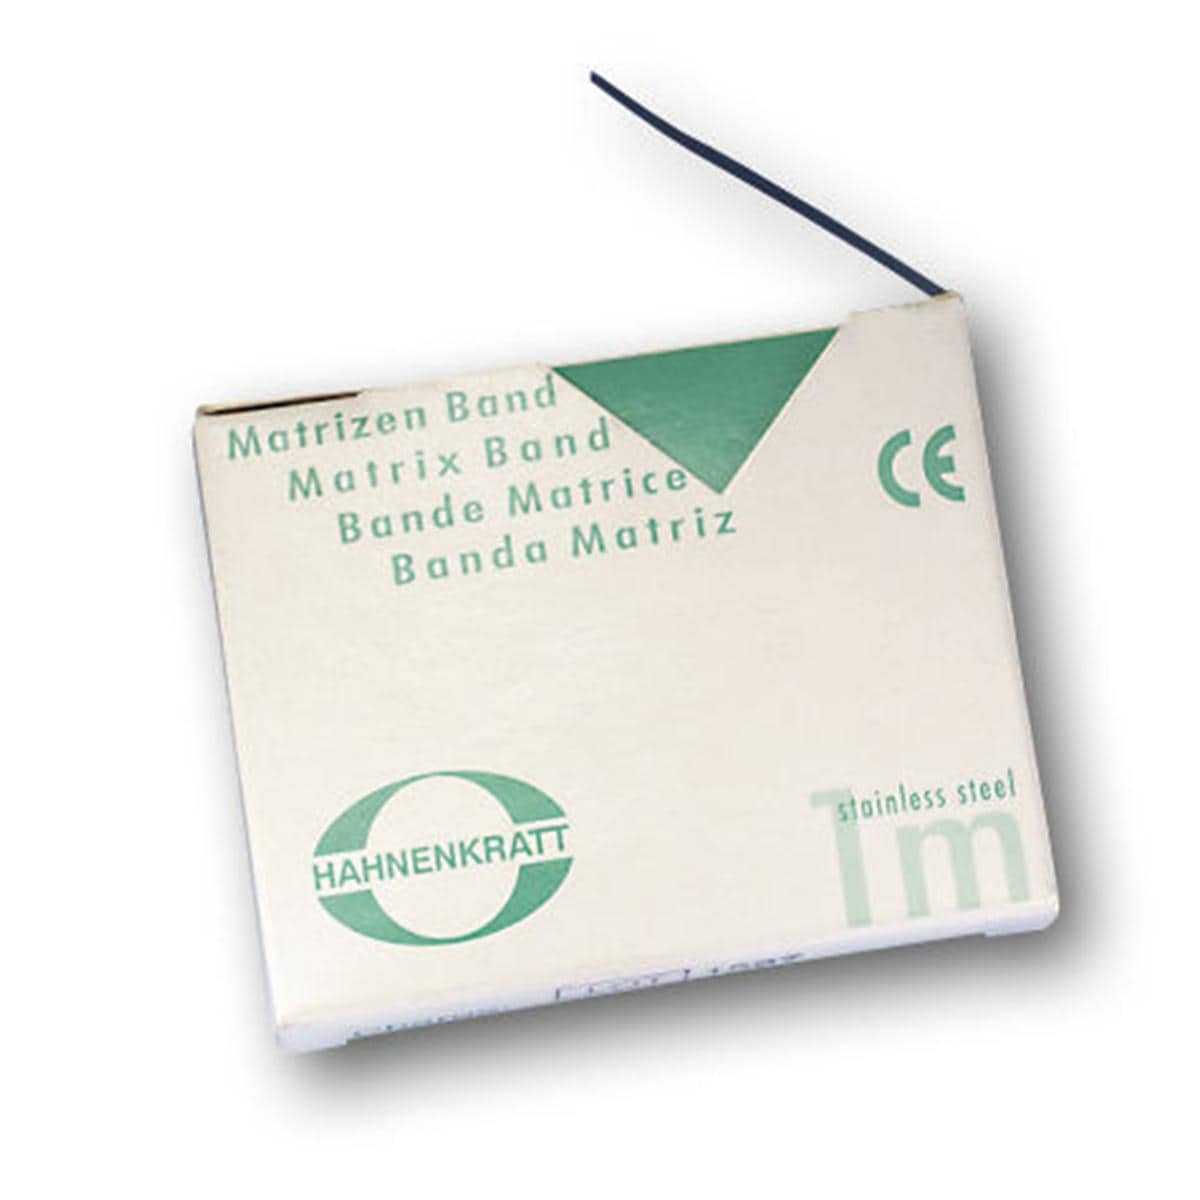 Matrizenband Hahnenkratt - Rolle 3 m - Breite 5 mm, Stärke 0,03 mm